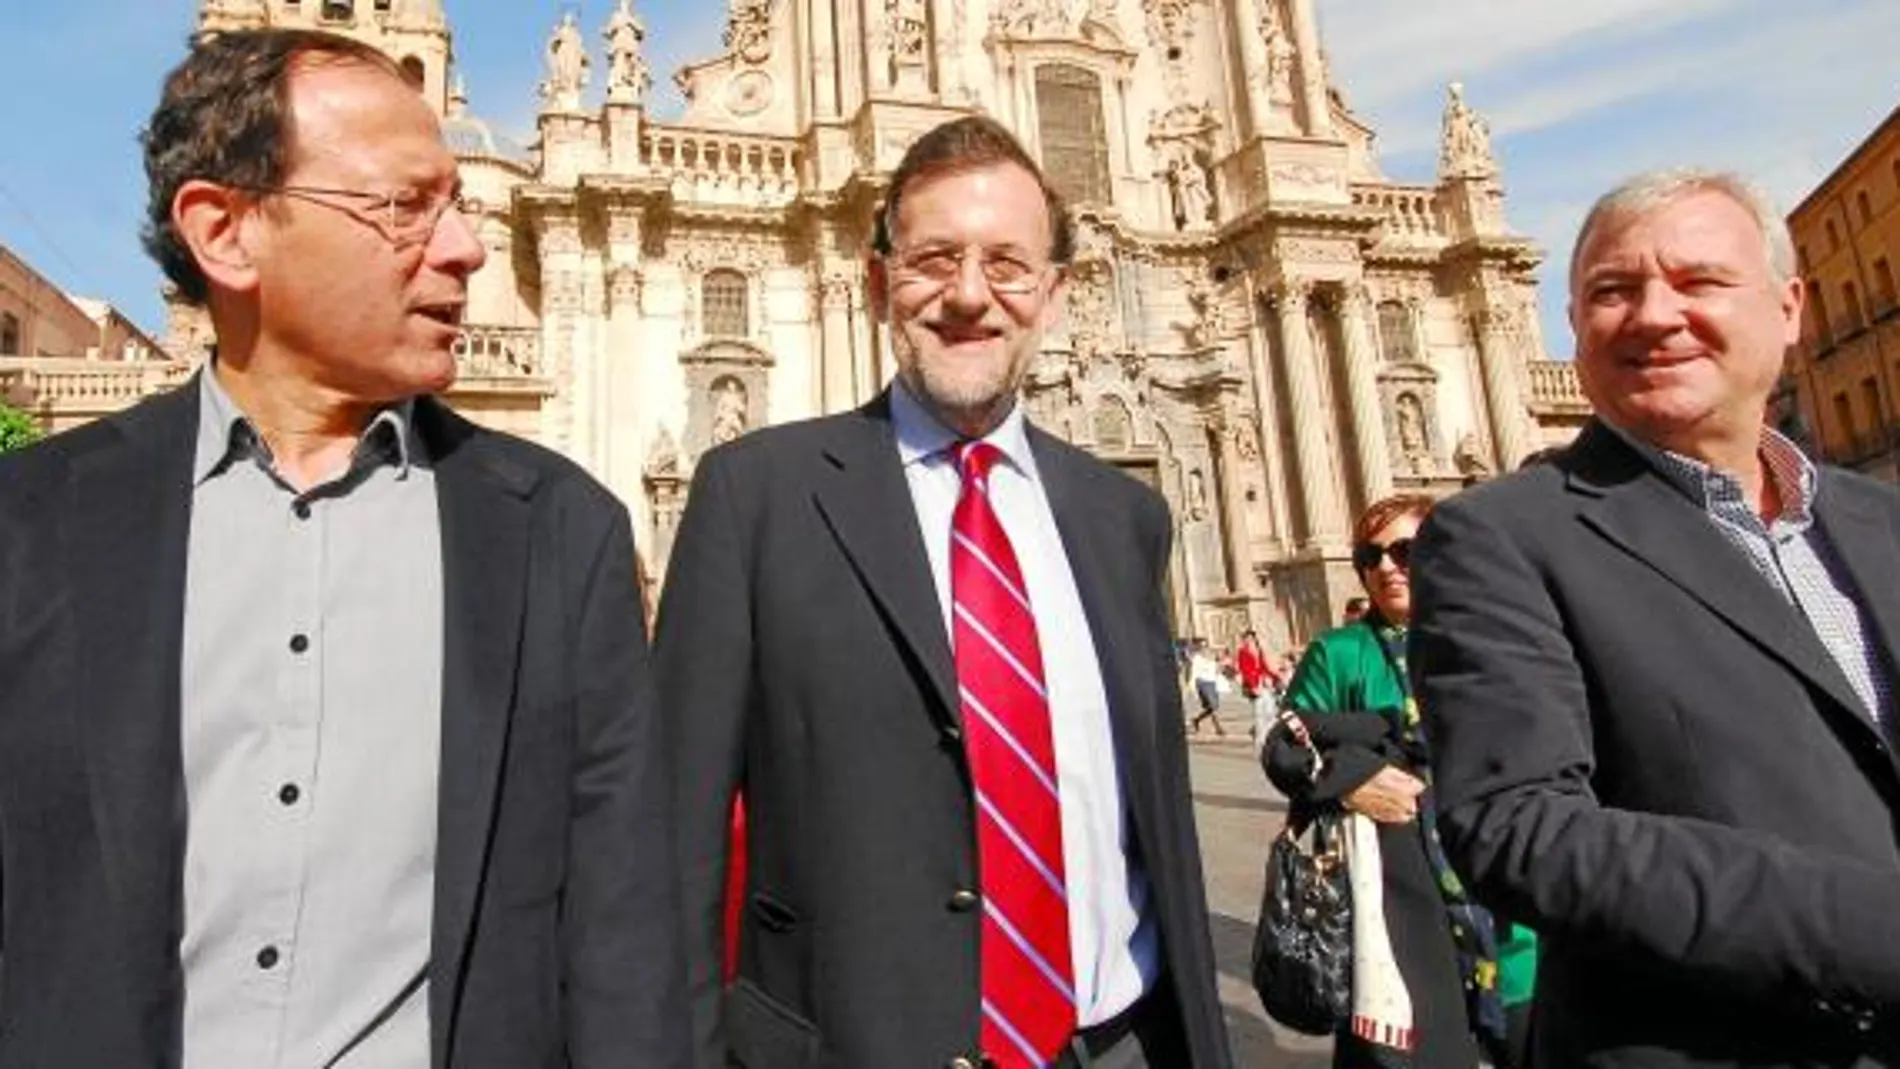 El secretario general del PP en la Región, Miguel Ángel Cámara, el líder de los populares, Mariano Rajoy, y el presidente de la Comunidad, Ramón Luis Valcárcel, en una imagen de archivo